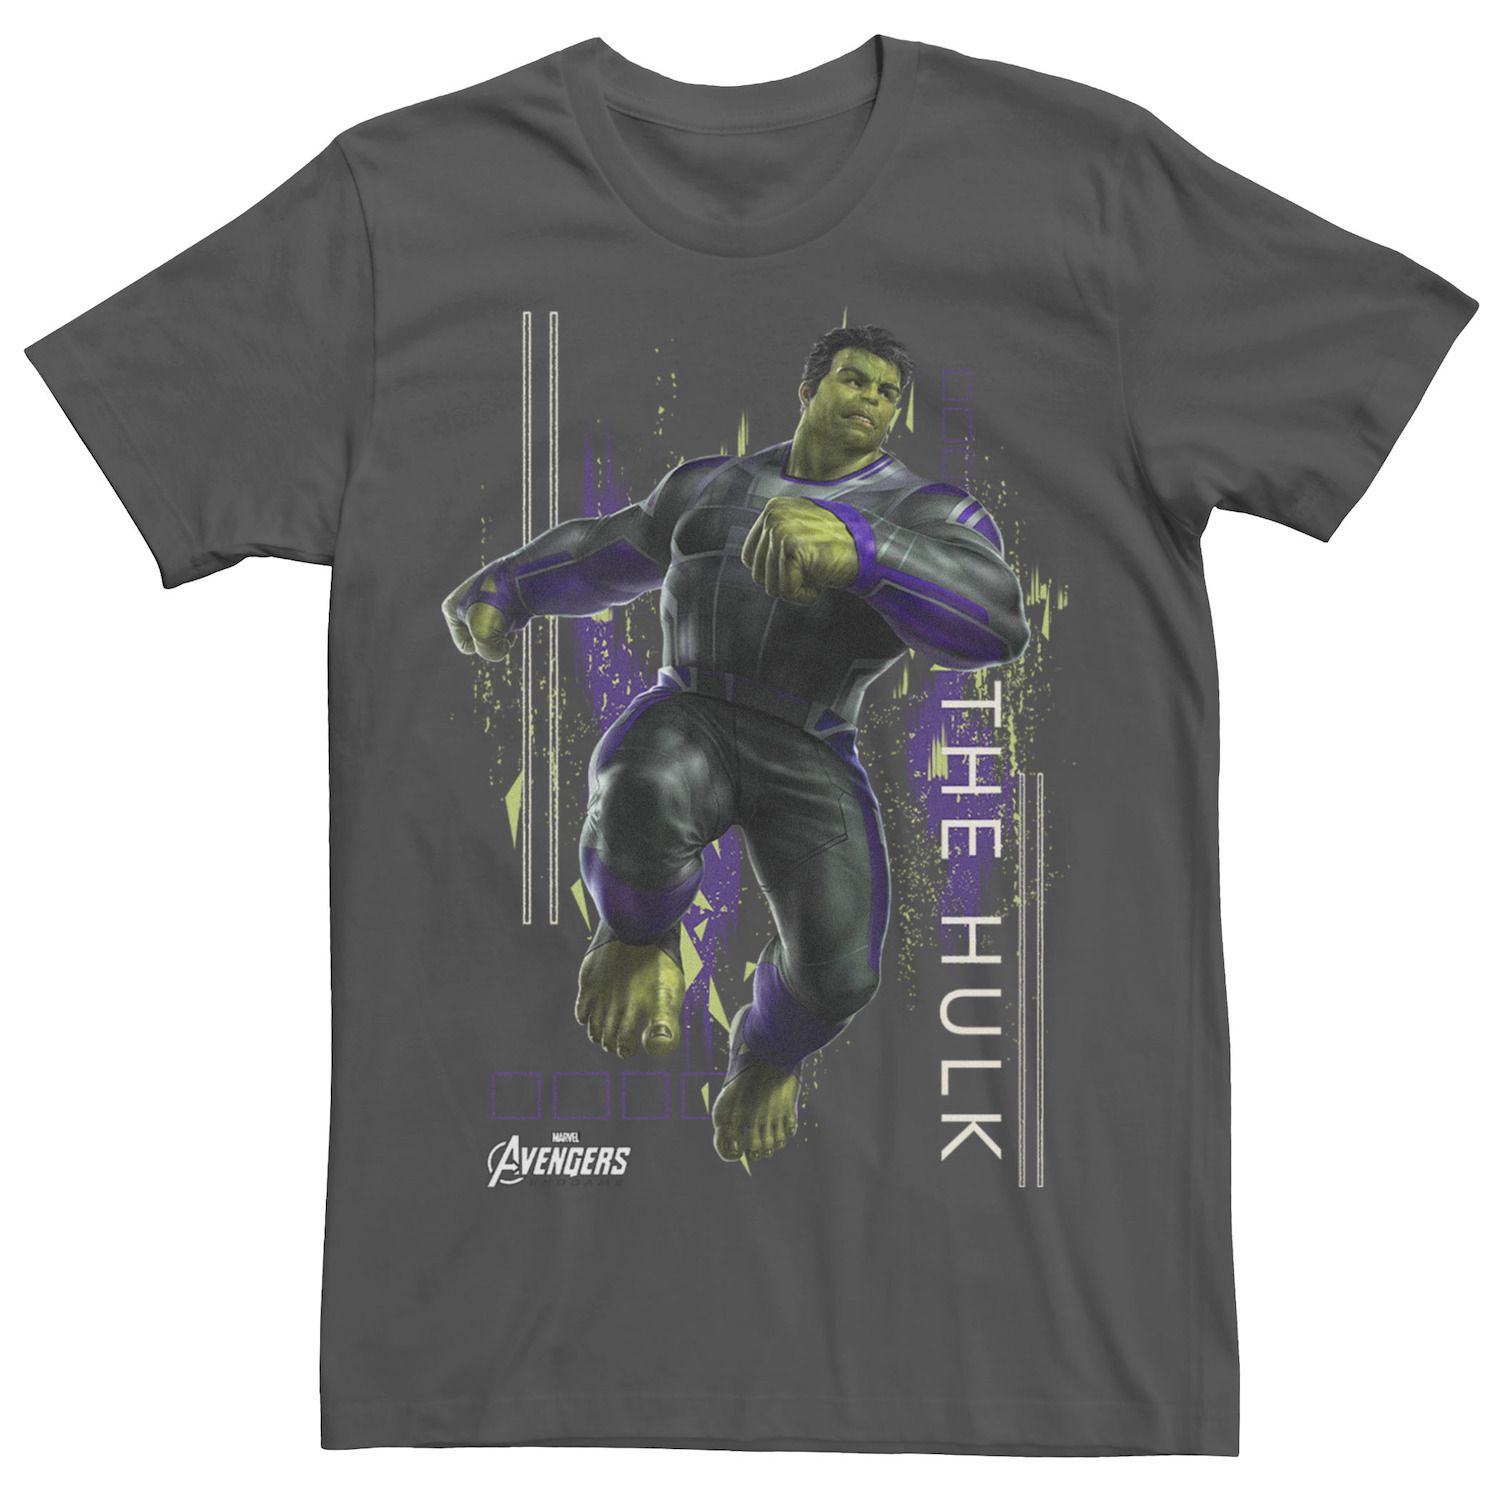 Мужская футболка с рисунком «Мстители: Финал, Халк» Marvel